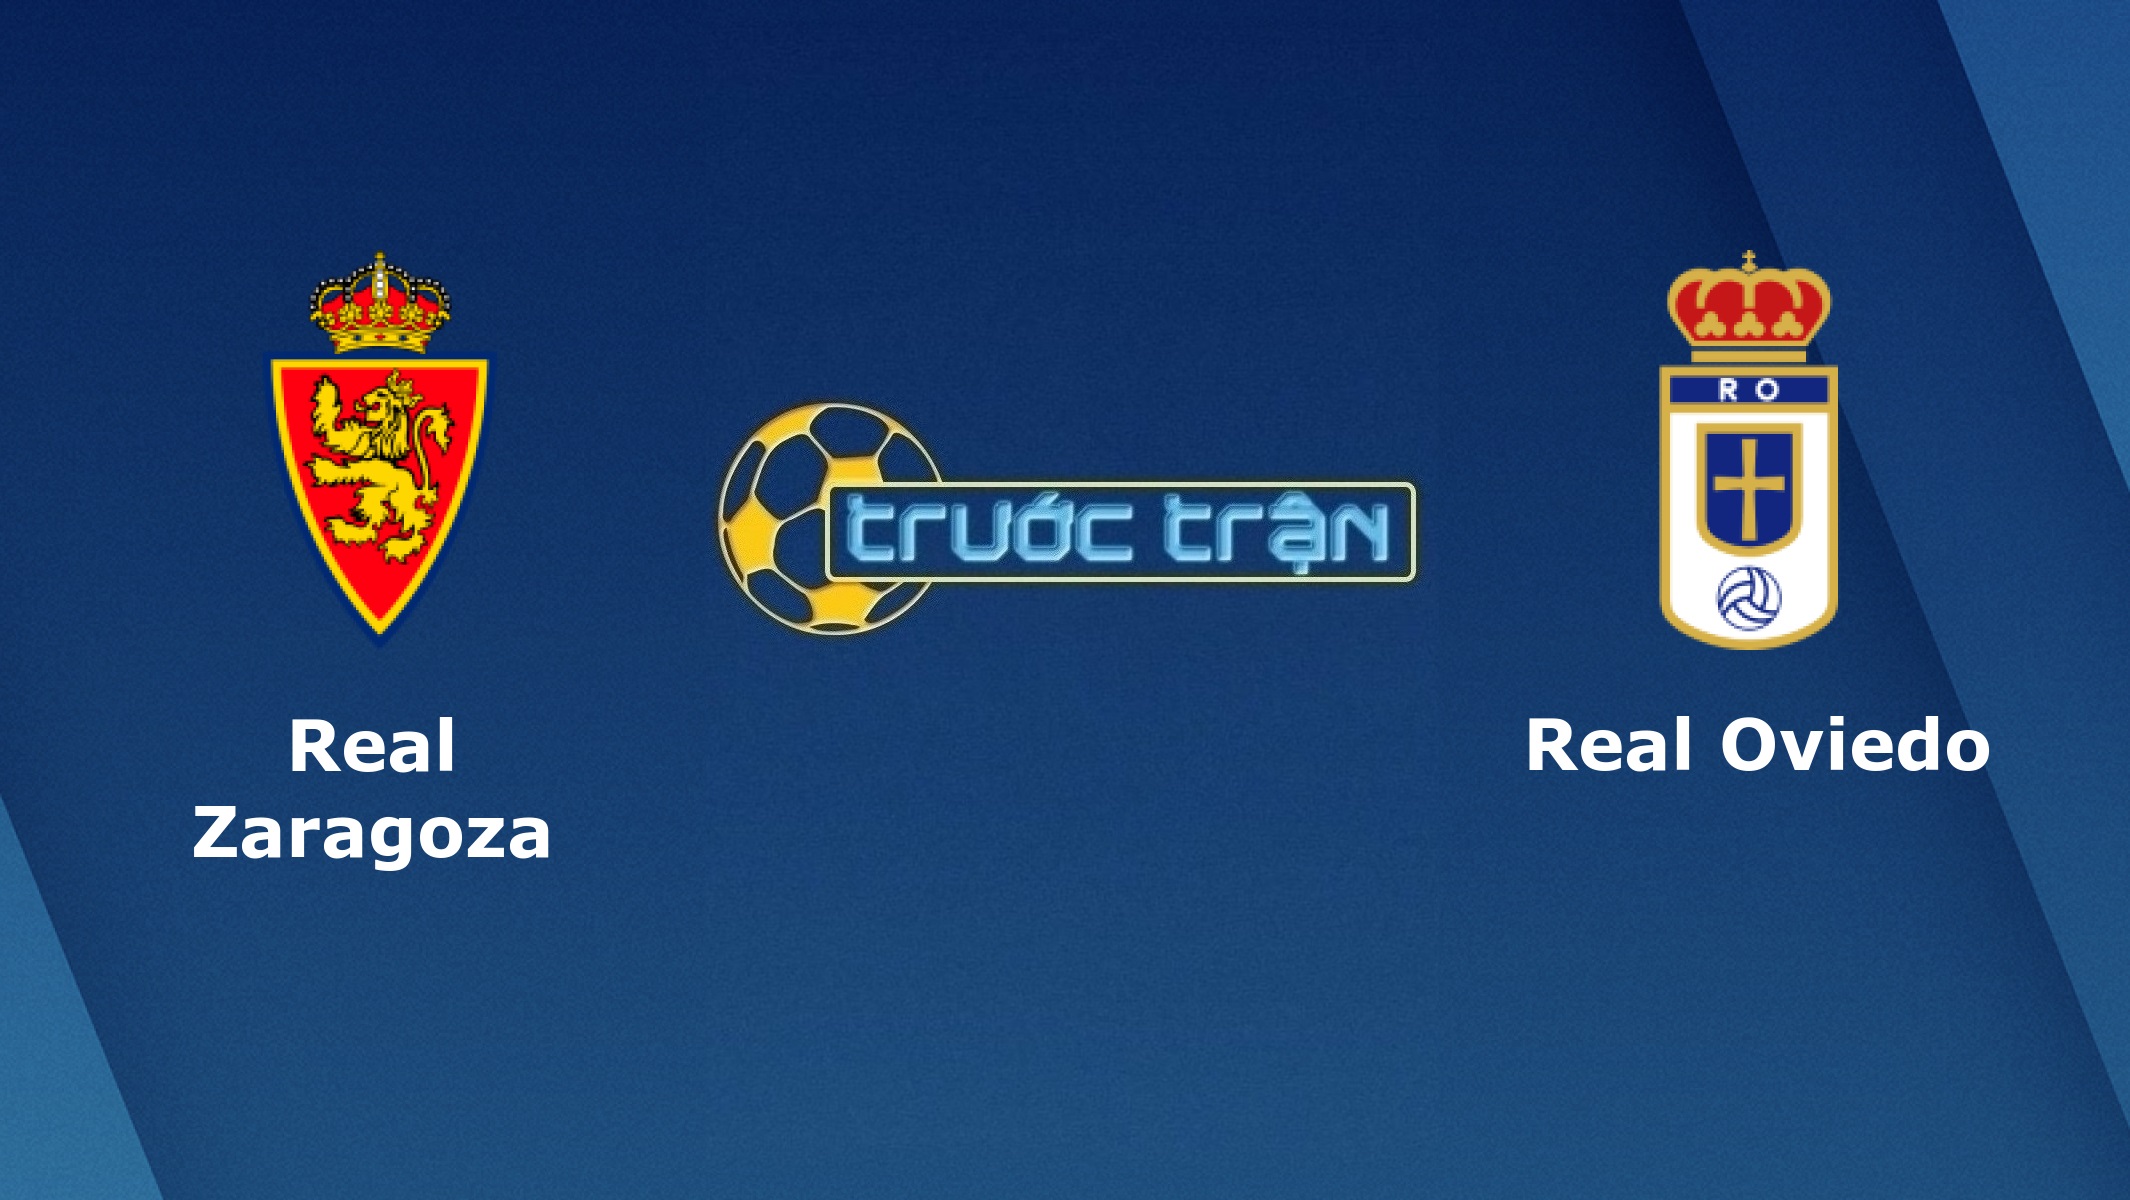 Real Zaragoza vs Real Oviedo – Tip kèo bóng đá hôm nay – 03h00 14/11/2020